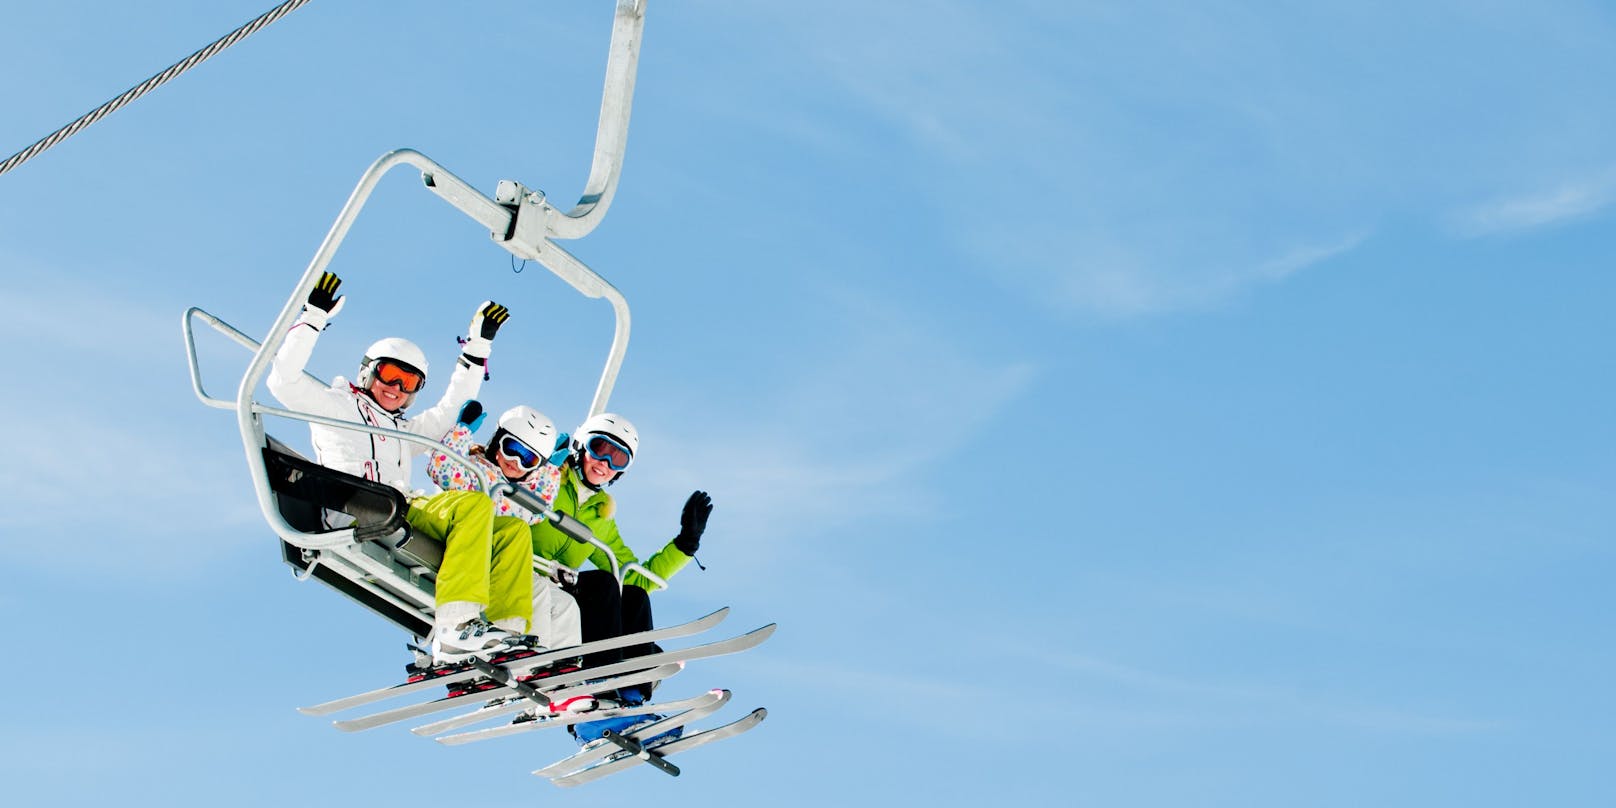 Am 24. Dezember startet die Corona-Skisaison. 